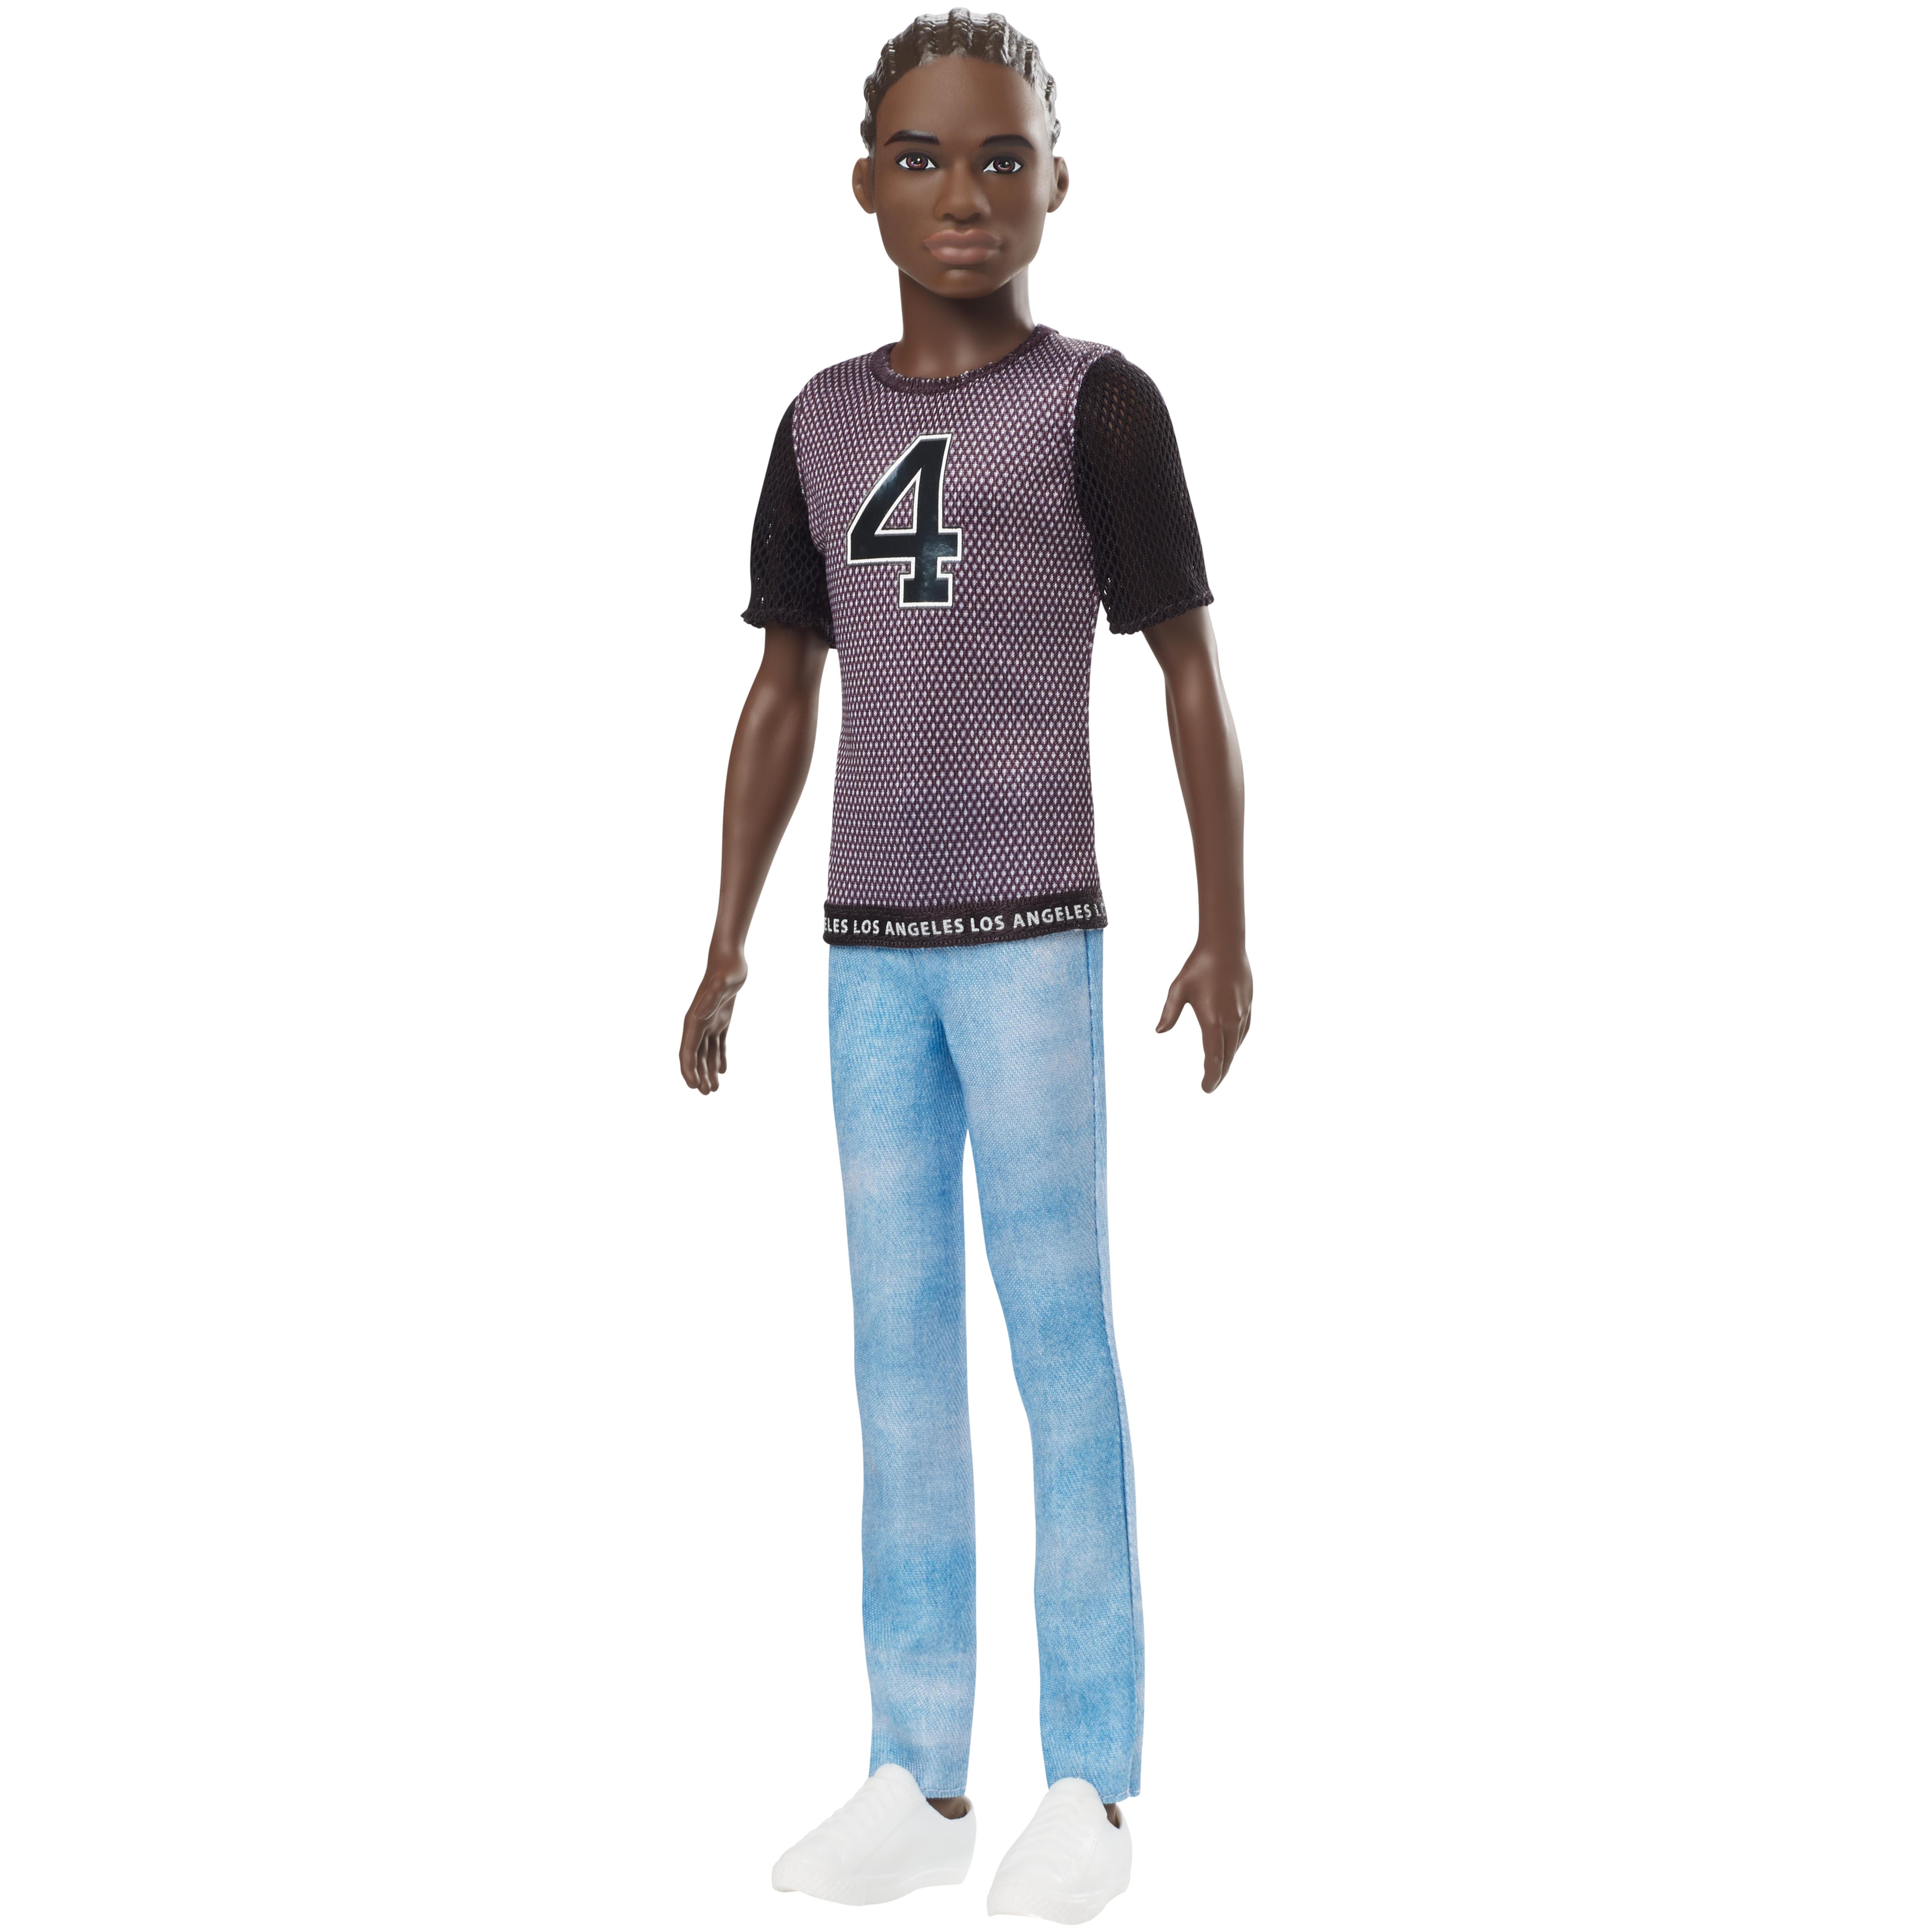 Кукла Barbie Игра с модой Голубые джинсы серая футболка